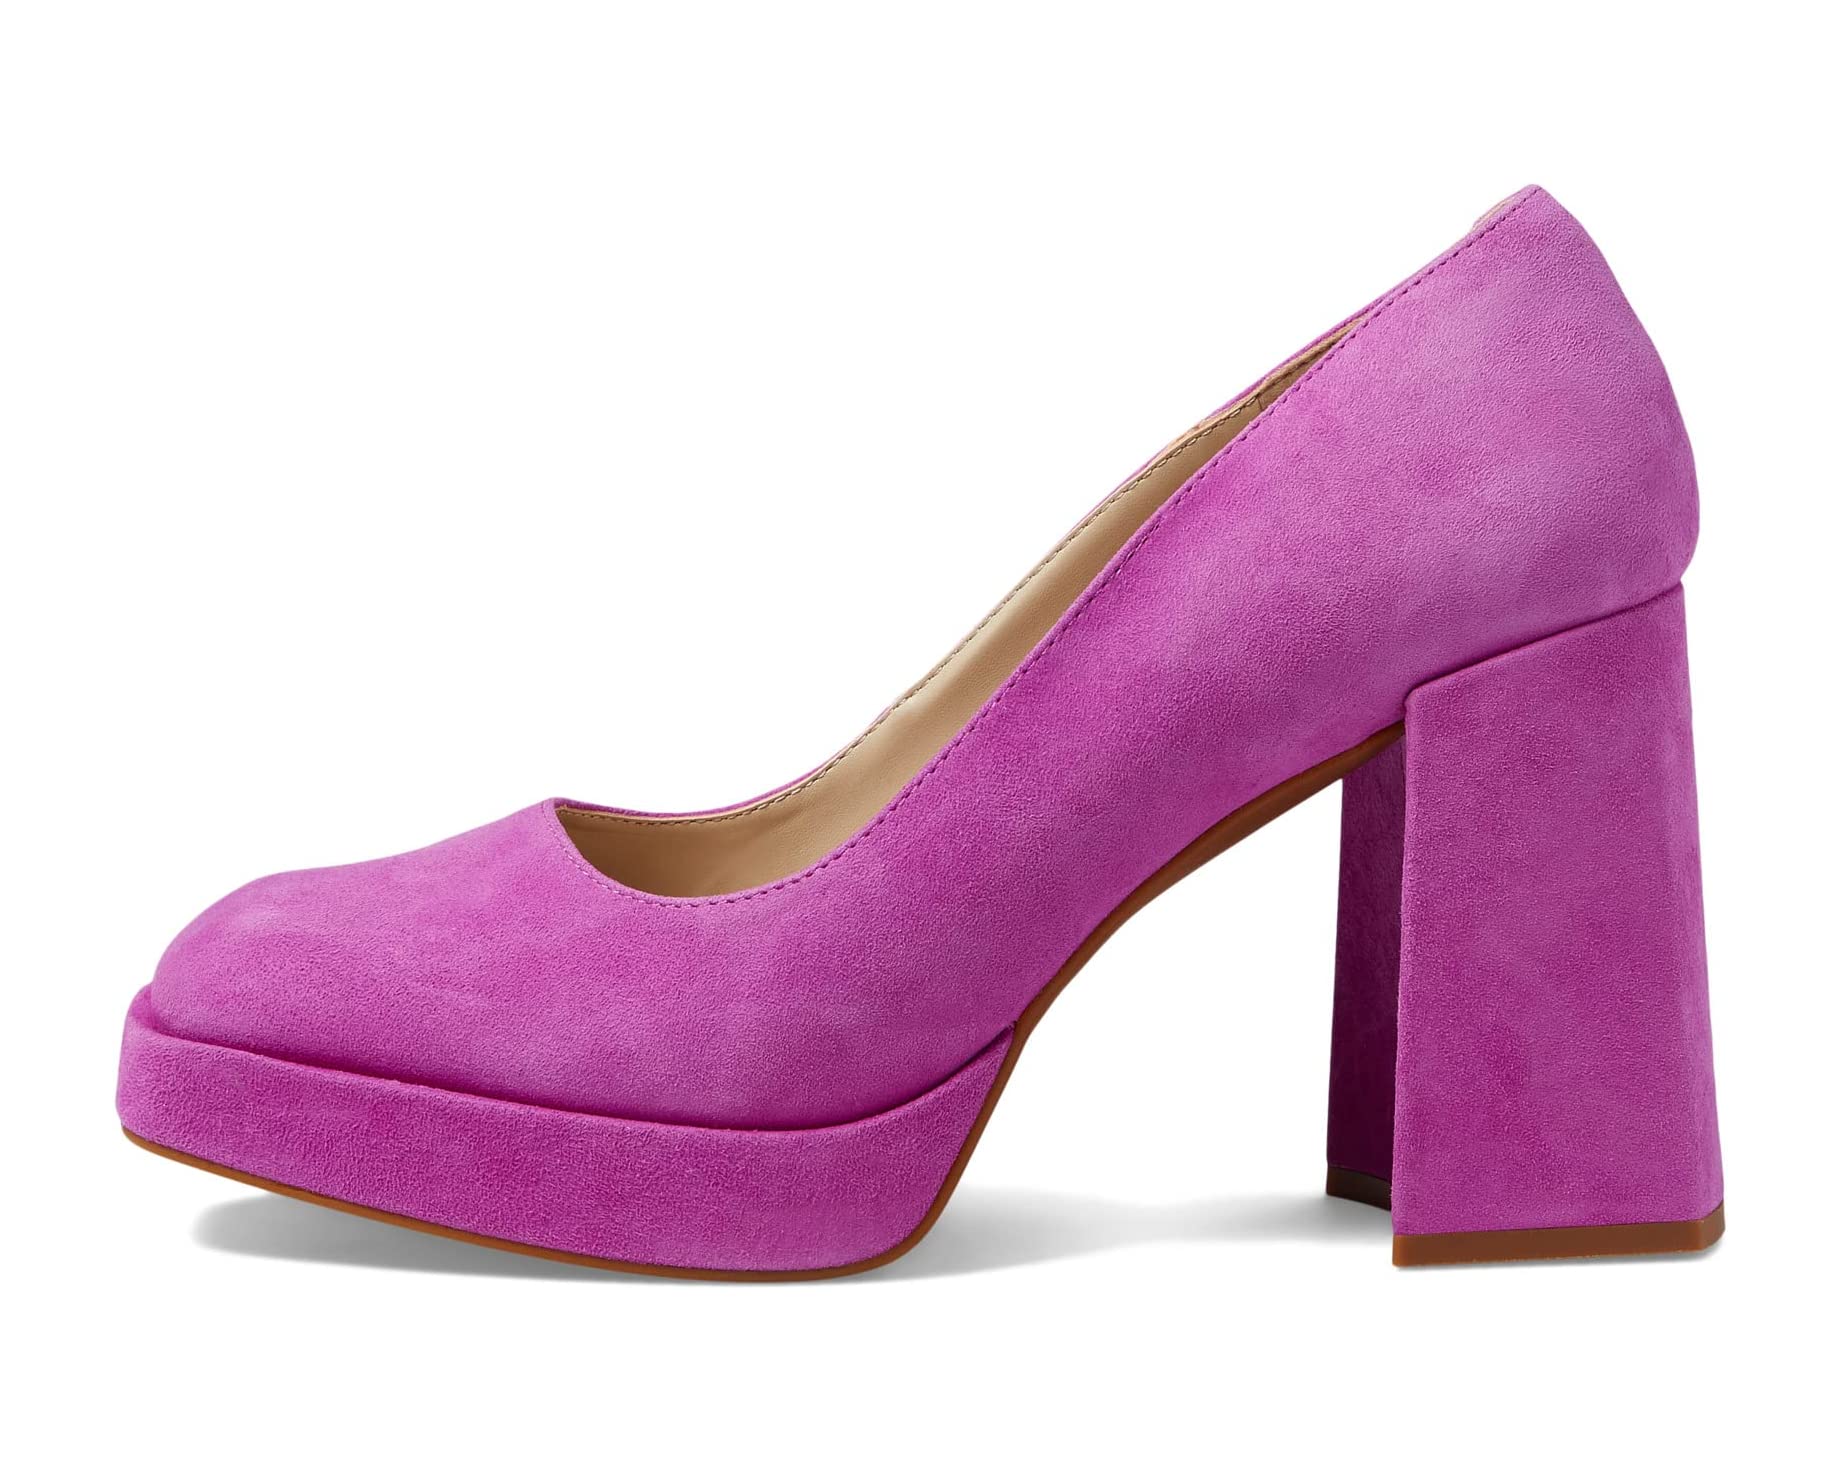 Туфли на каблуках Bri Pump Kenneth Cole New York, пурпурный женские туфли лодочки romi kenneth cole new york цвет black white